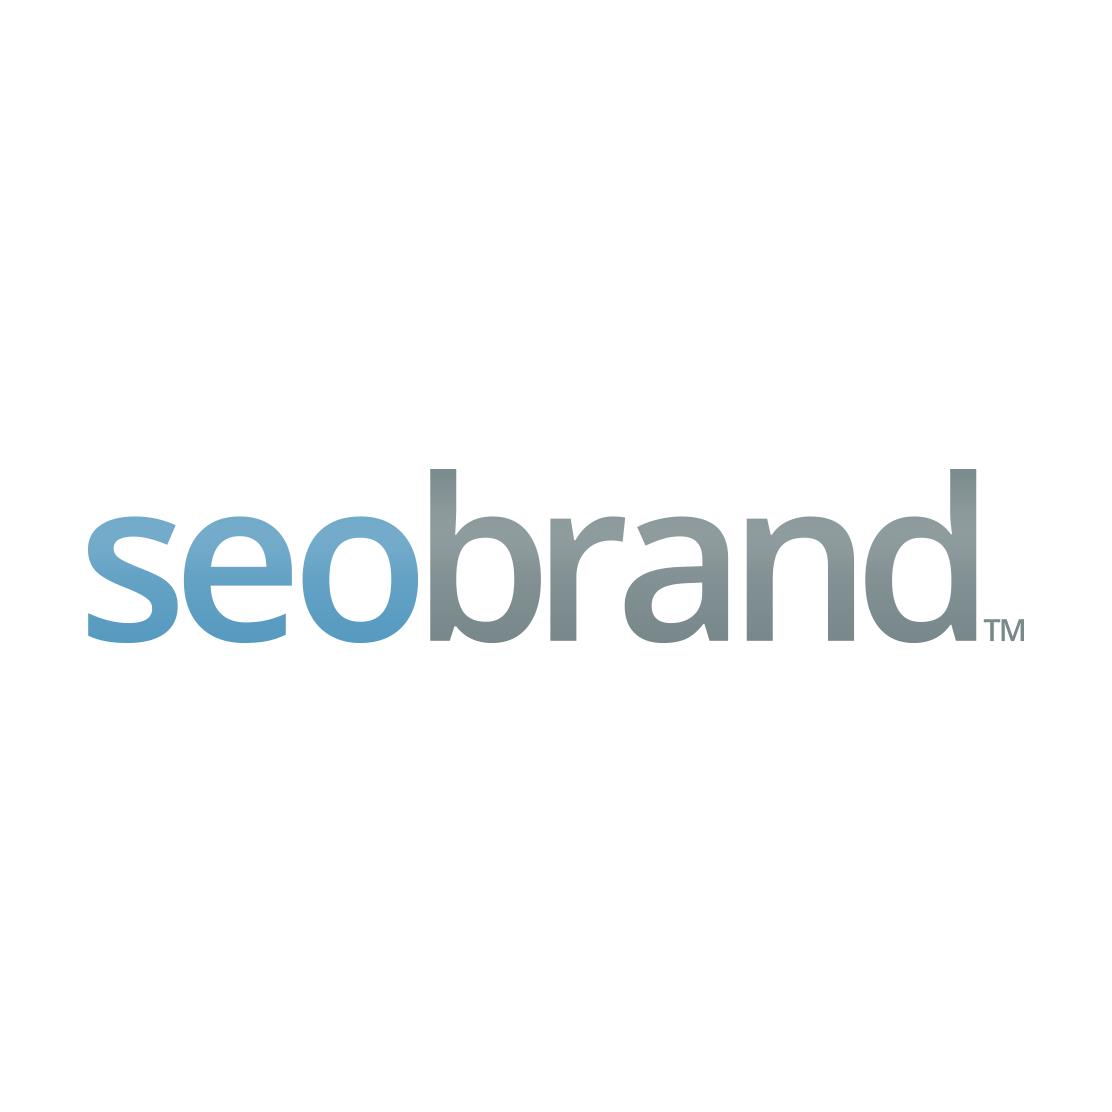 Top Social Media Marketing Company Logo: SEO Brand